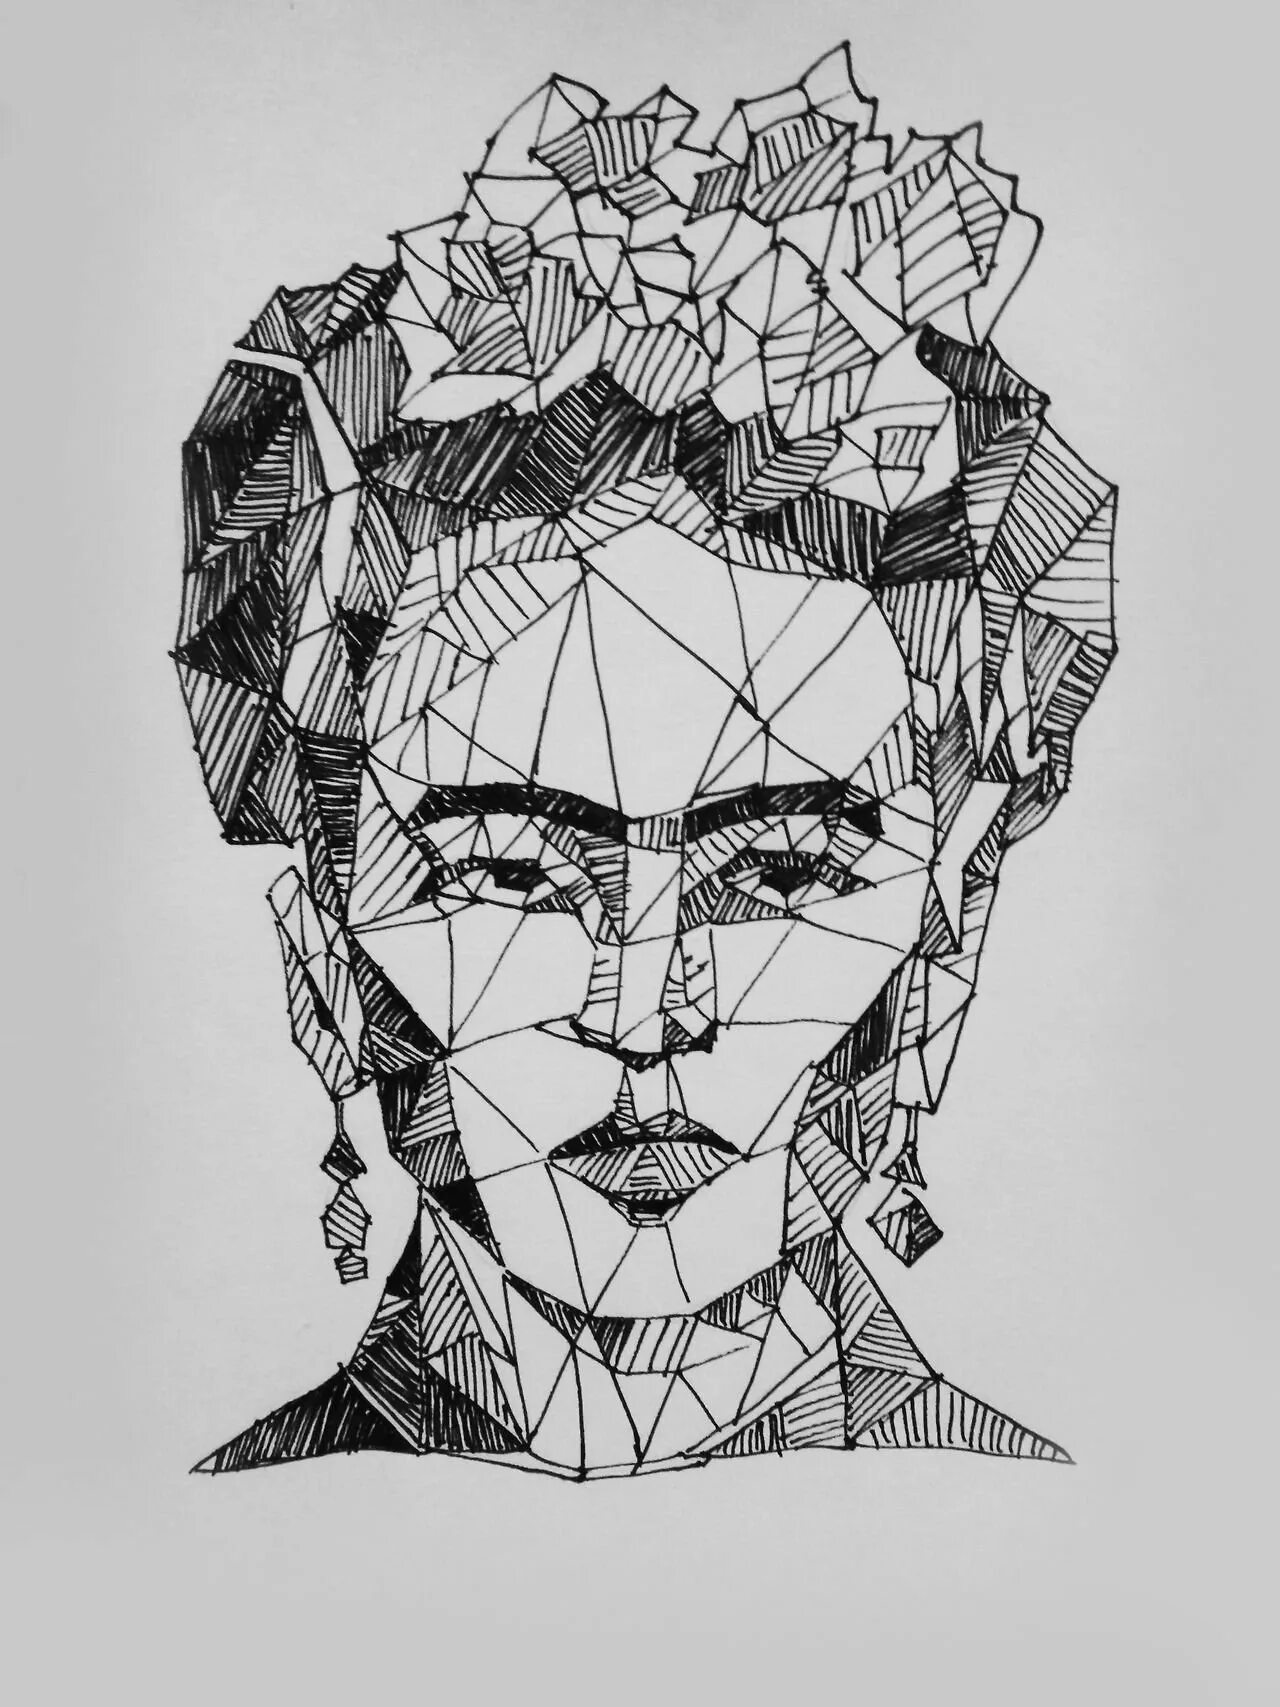 Геометрический рисунок треугольники. Полигональные портреты Джонни Деппа. Геометрический стиль рисования.